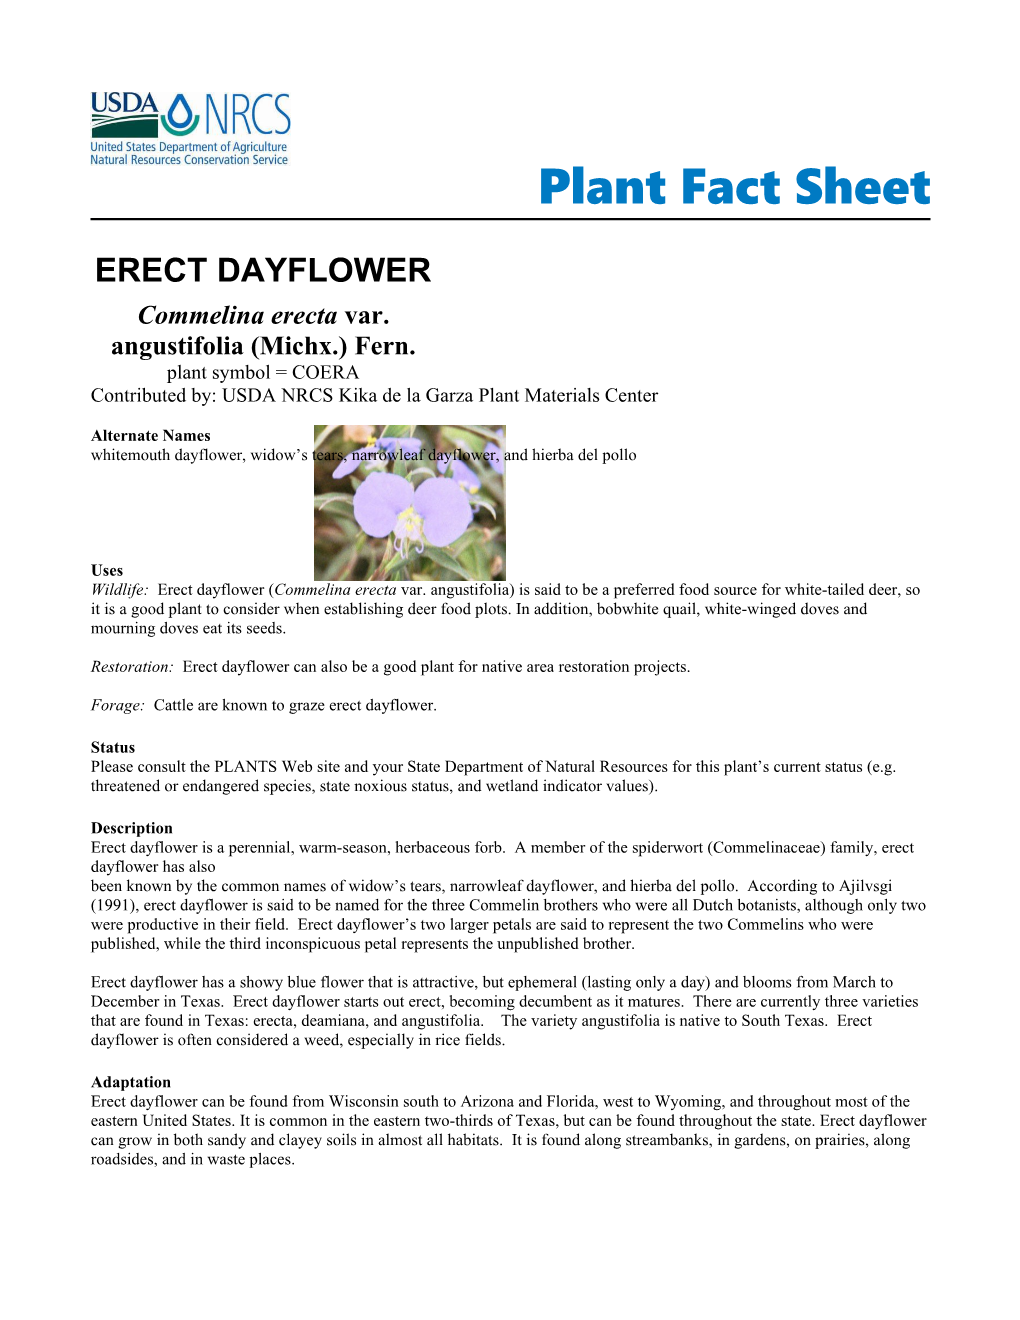 Erect Dayflower Plant Fact Sheet